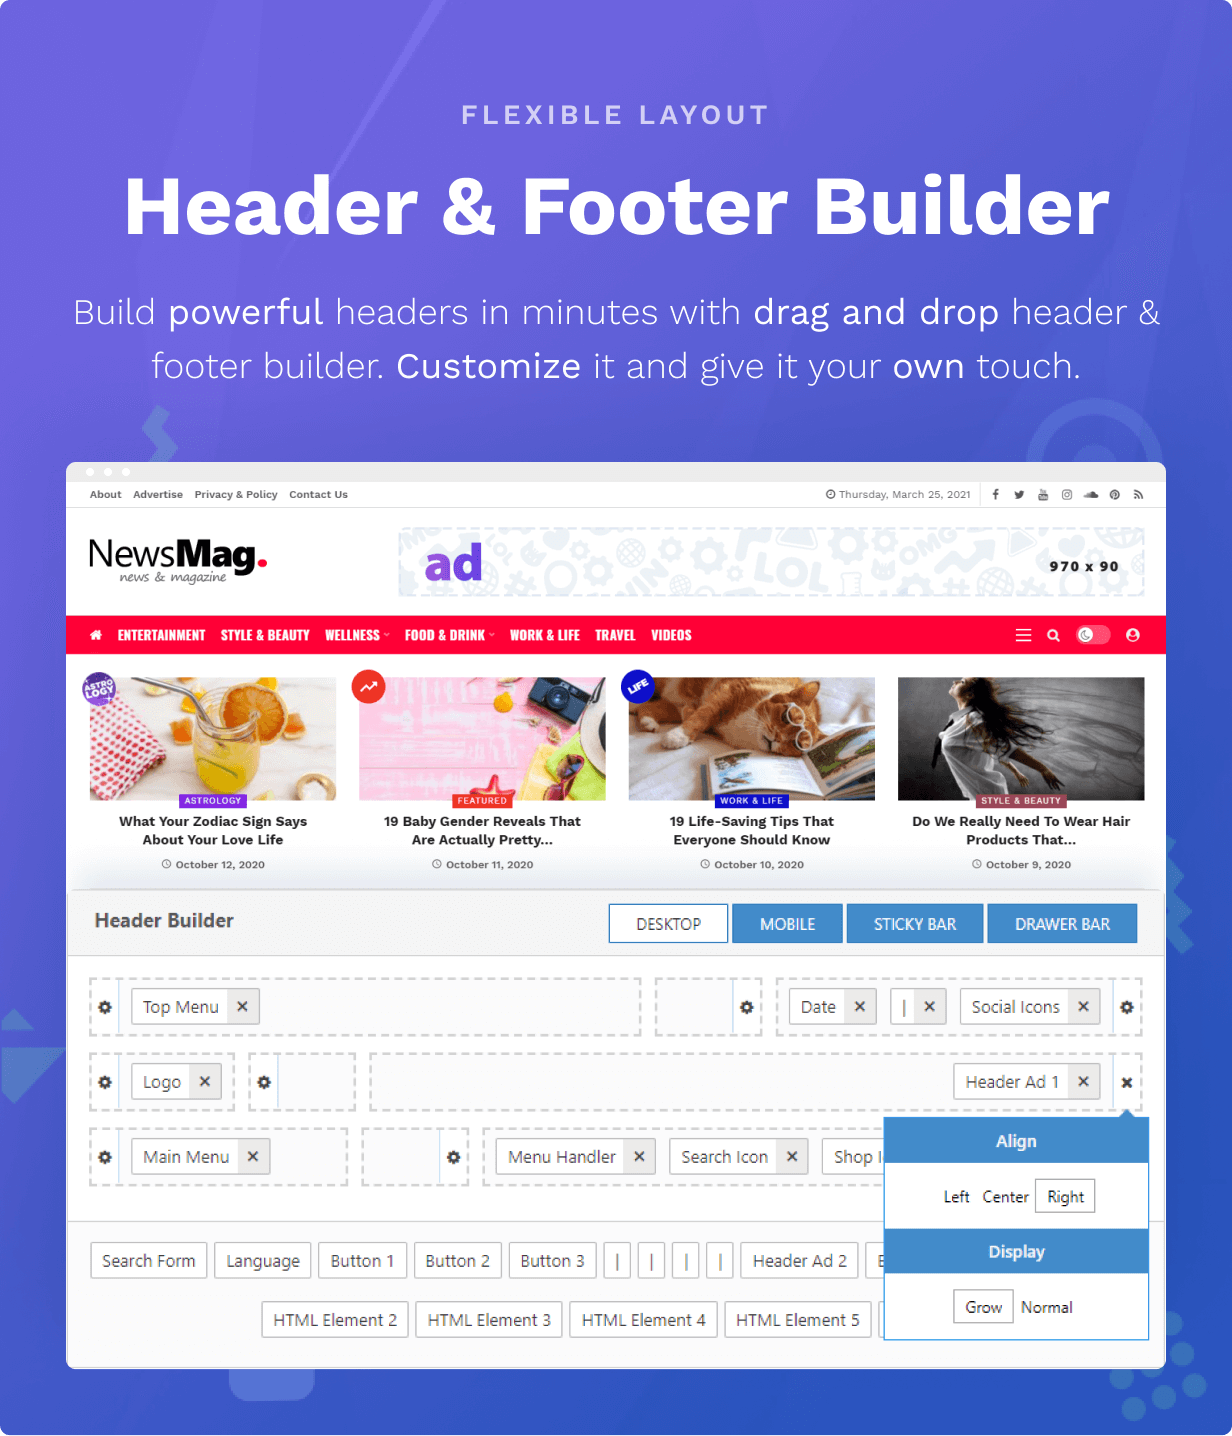 Header & Footer Builder